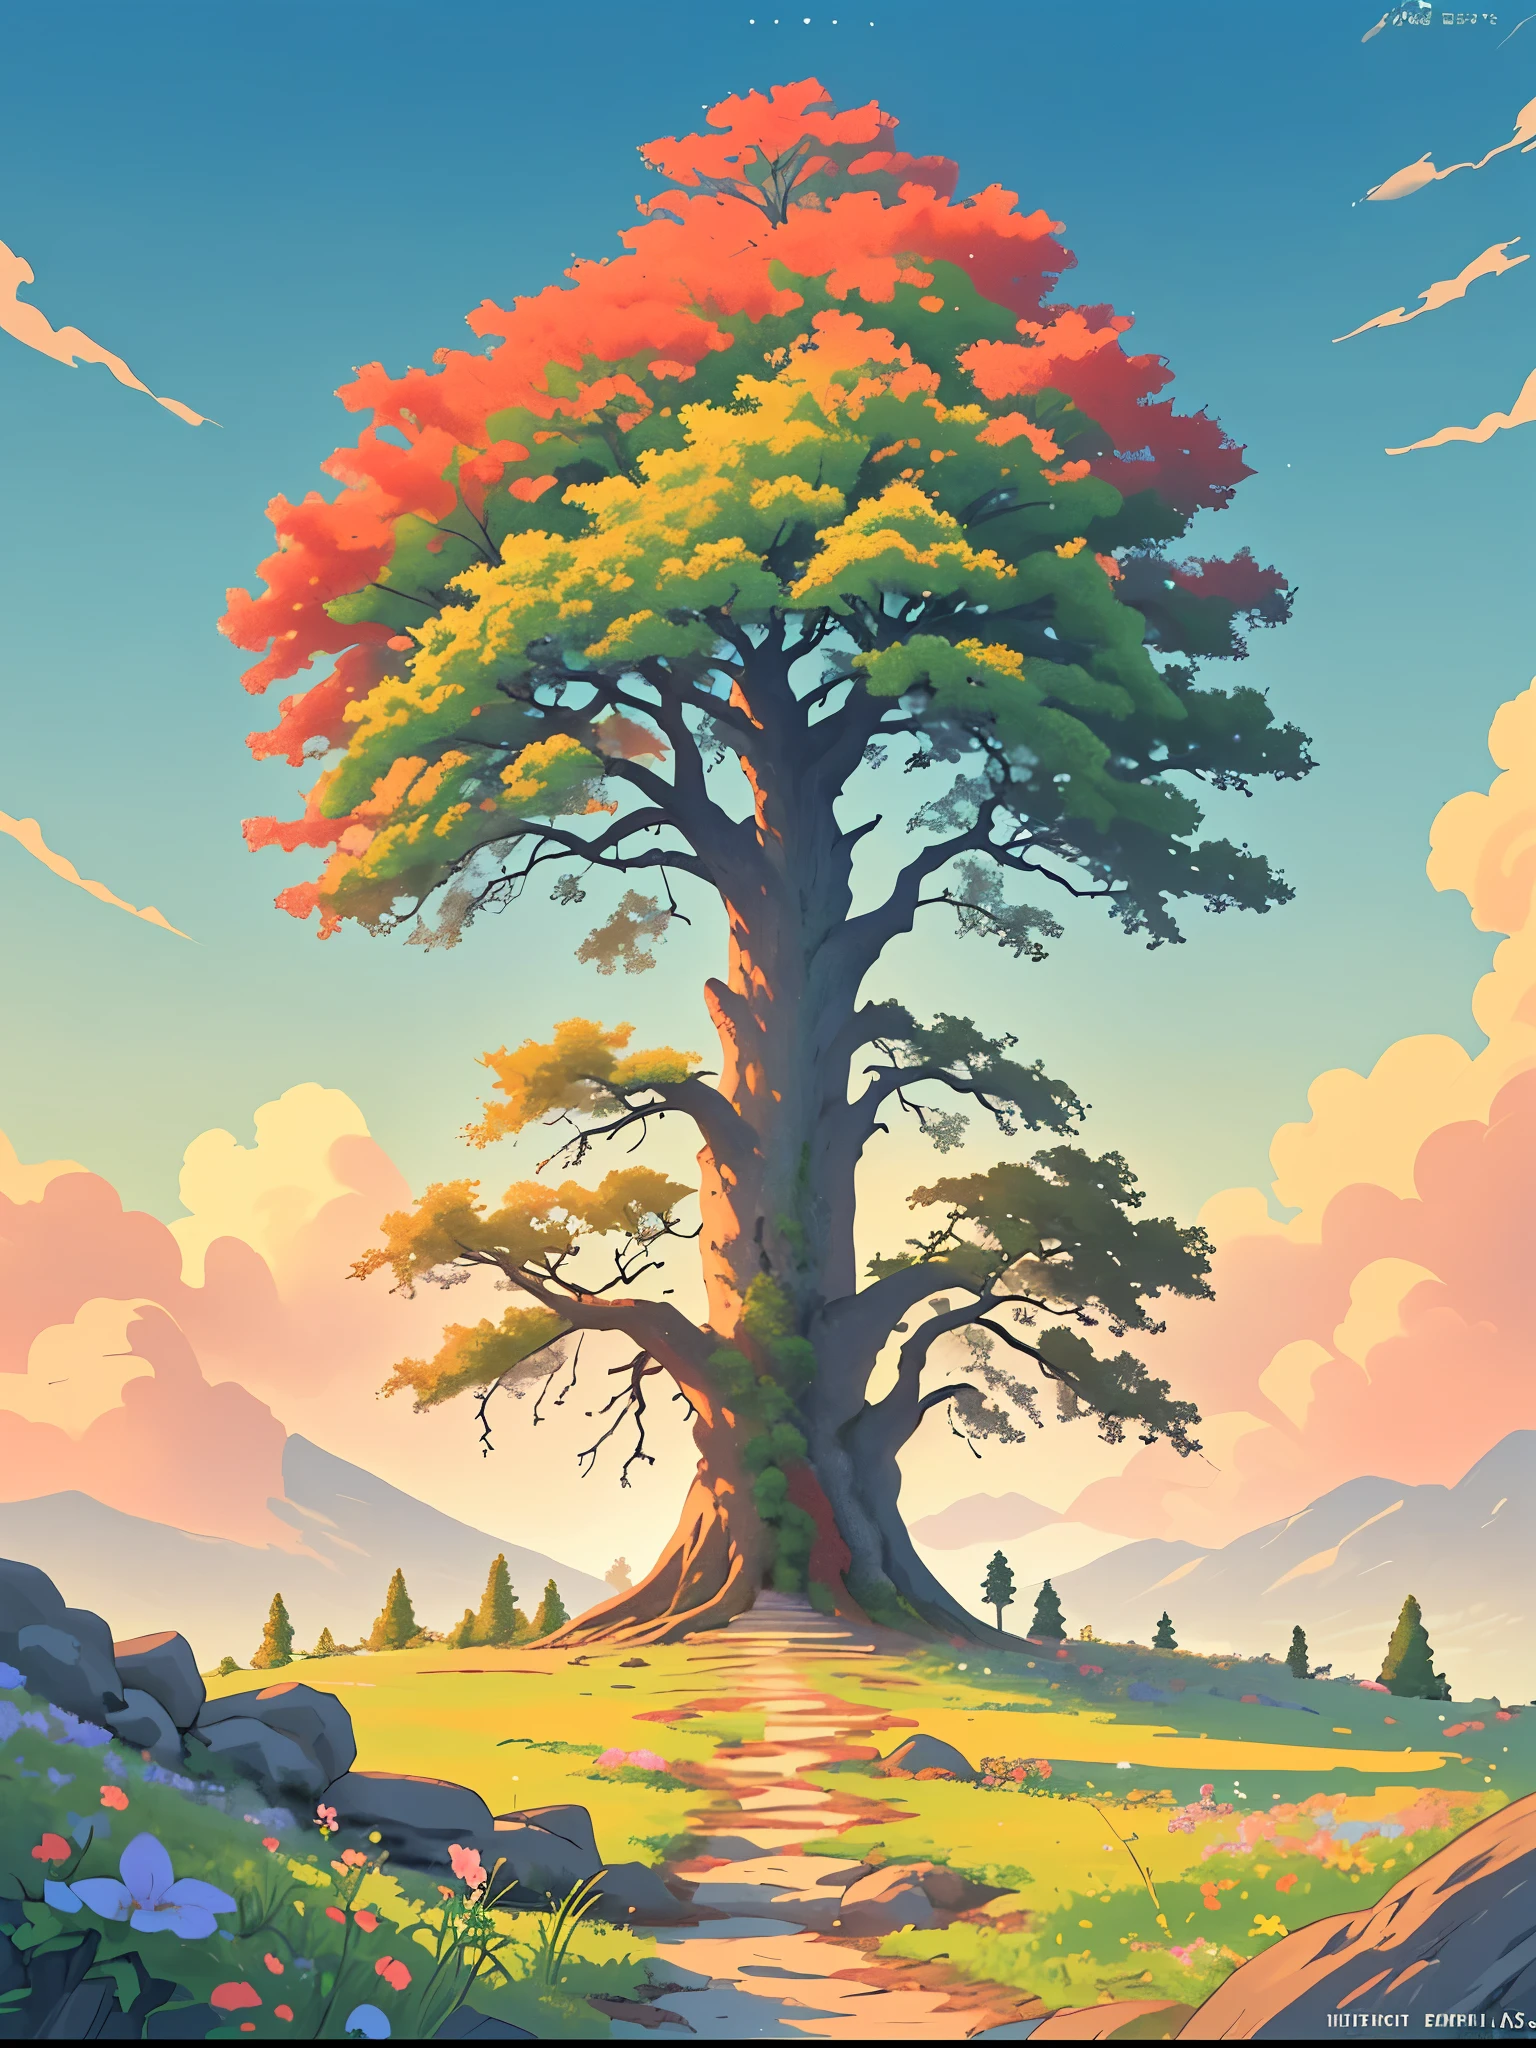 화창한 날 땅에 풀과 꽃이 있는 산 가장자리에 있는 아름다운 오래된 나무의 광각 평면도 이미지, 애니메이션 스타일